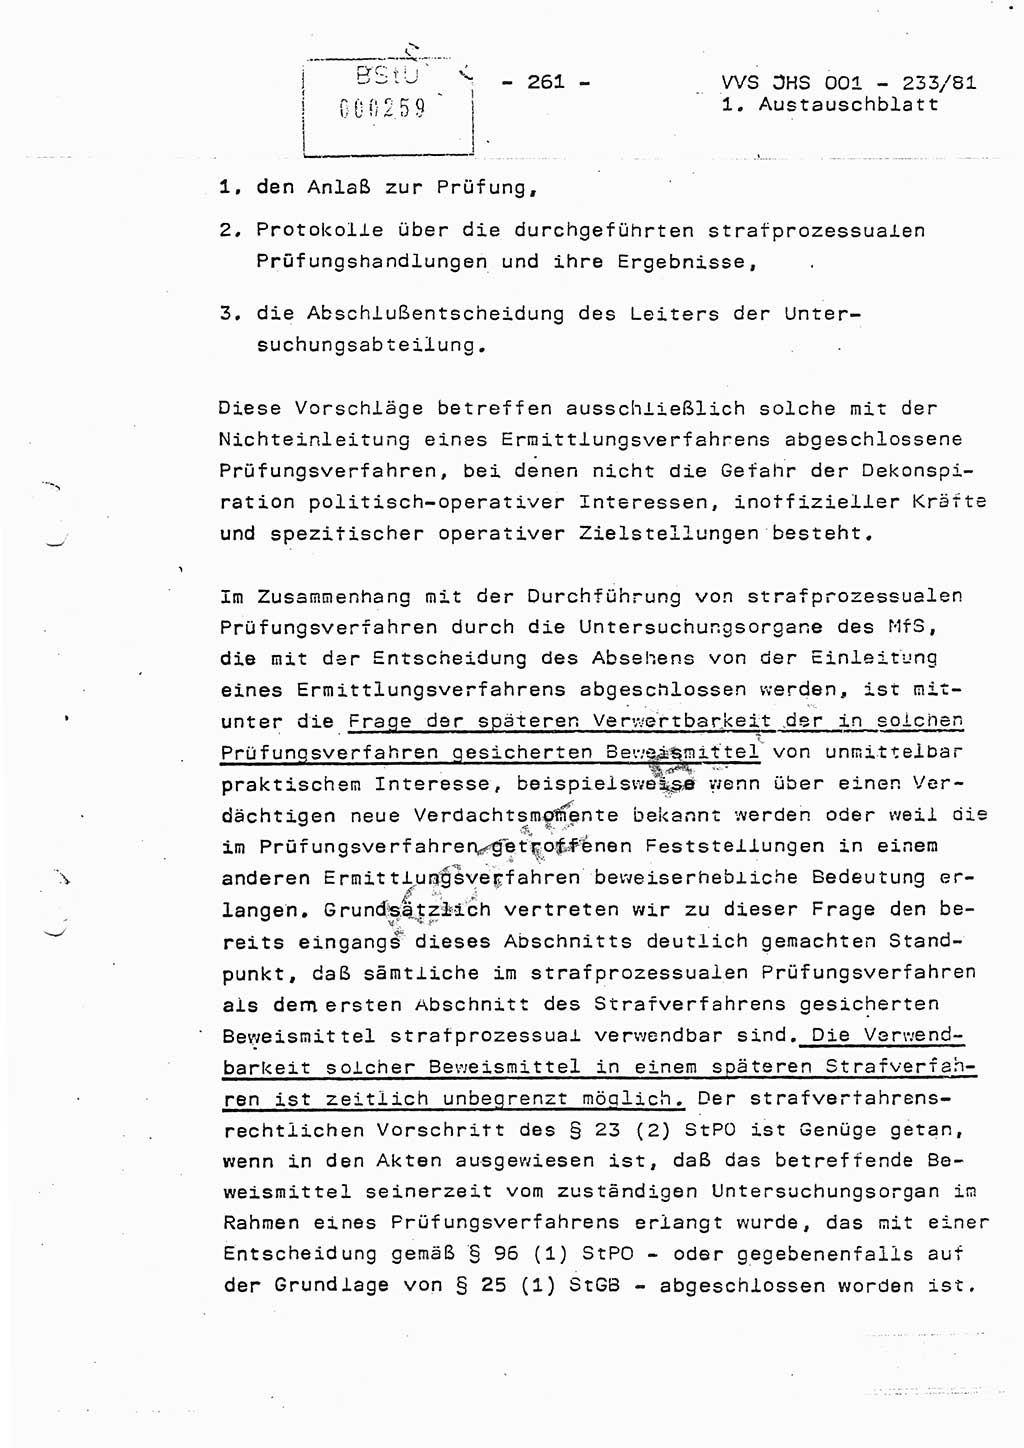 Dissertation Oberstleutnant Horst Zank (JHS), Oberstleutnant Dr. Karl-Heinz Knoblauch (JHS), Oberstleutnant Gustav-Adolf Kowalewski (HA Ⅸ), Oberstleutnant Wolfgang Plötner (HA Ⅸ), Ministerium für Staatssicherheit (MfS) [Deutsche Demokratische Republik (DDR)], Juristische Hochschule (JHS), Vertrauliche Verschlußsache (VVS) o001-233/81, Potsdam 1981, Blatt 261 (Diss. MfS DDR JHS VVS o001-233/81 1981, Bl. 261)